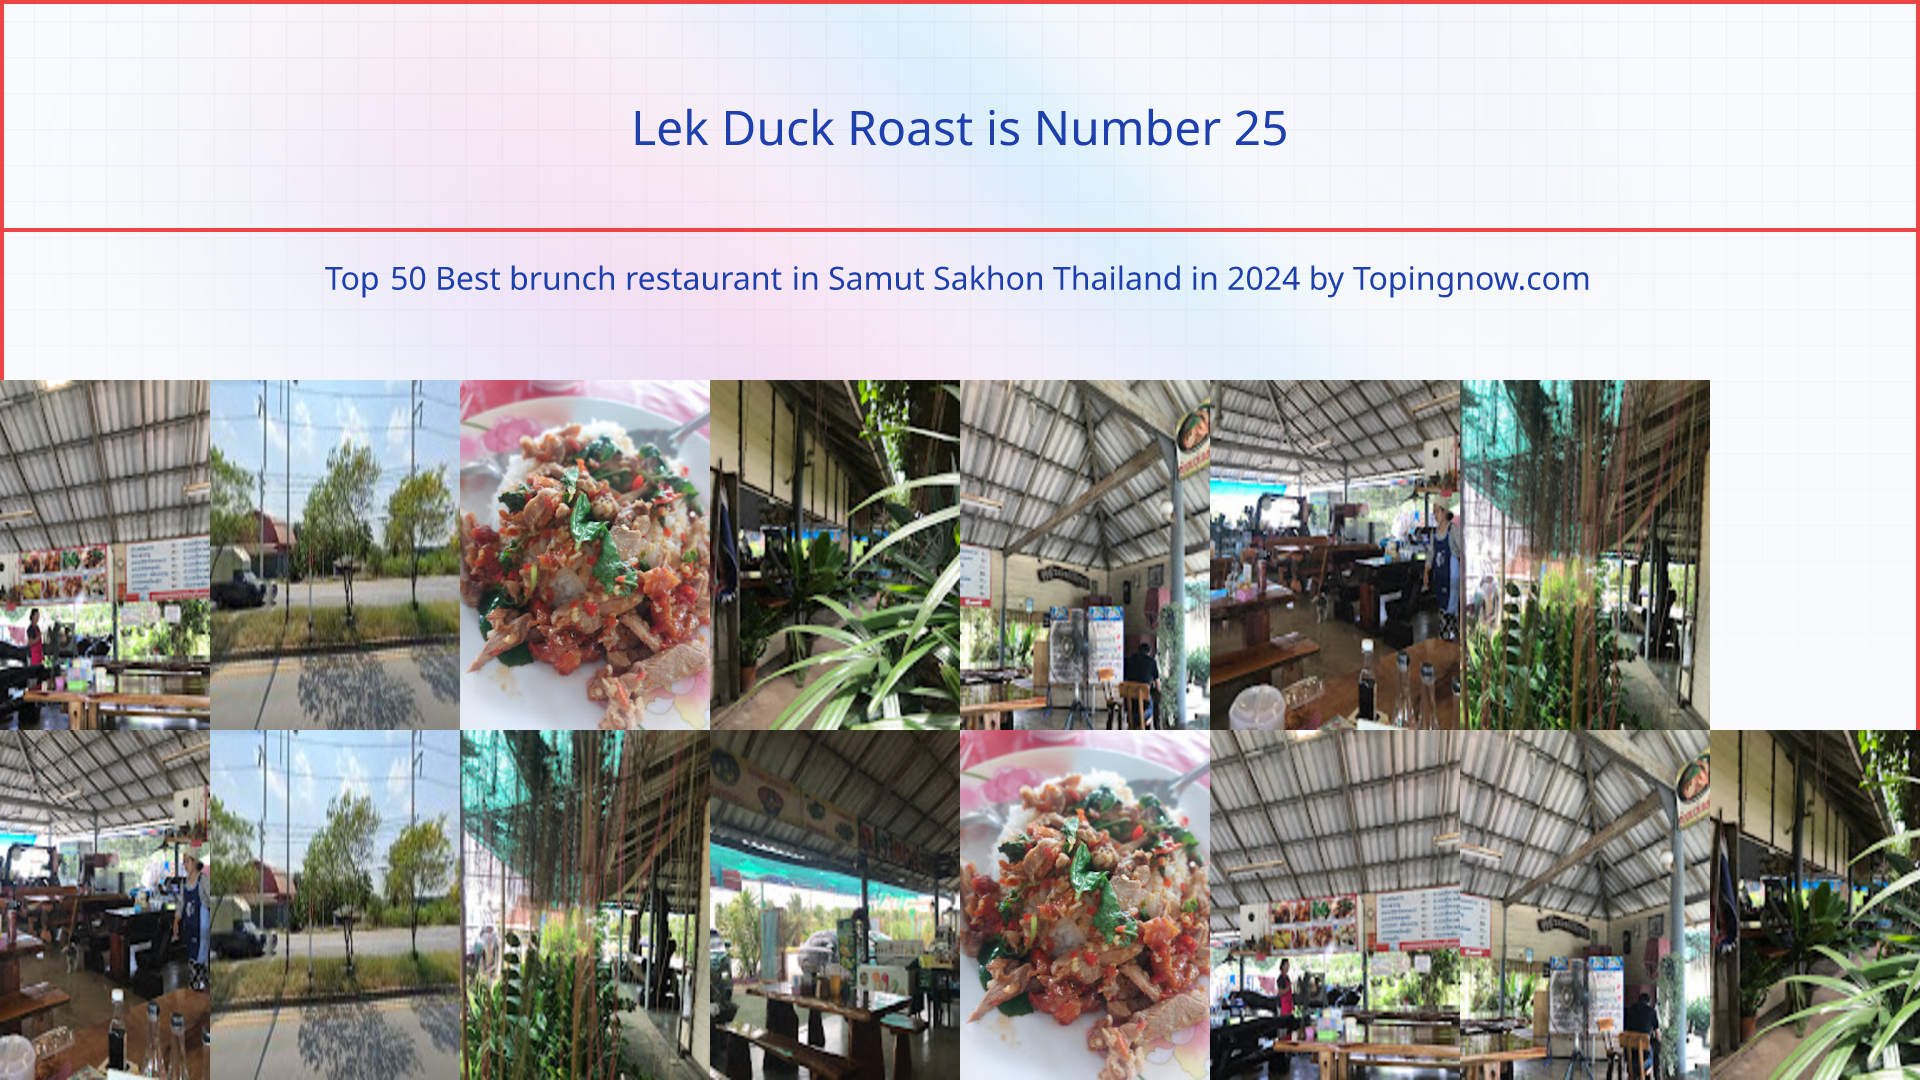 Lek Duck Roast: Top 50 Best brunch restaurant in Samut Sakhon Thailand in 2024